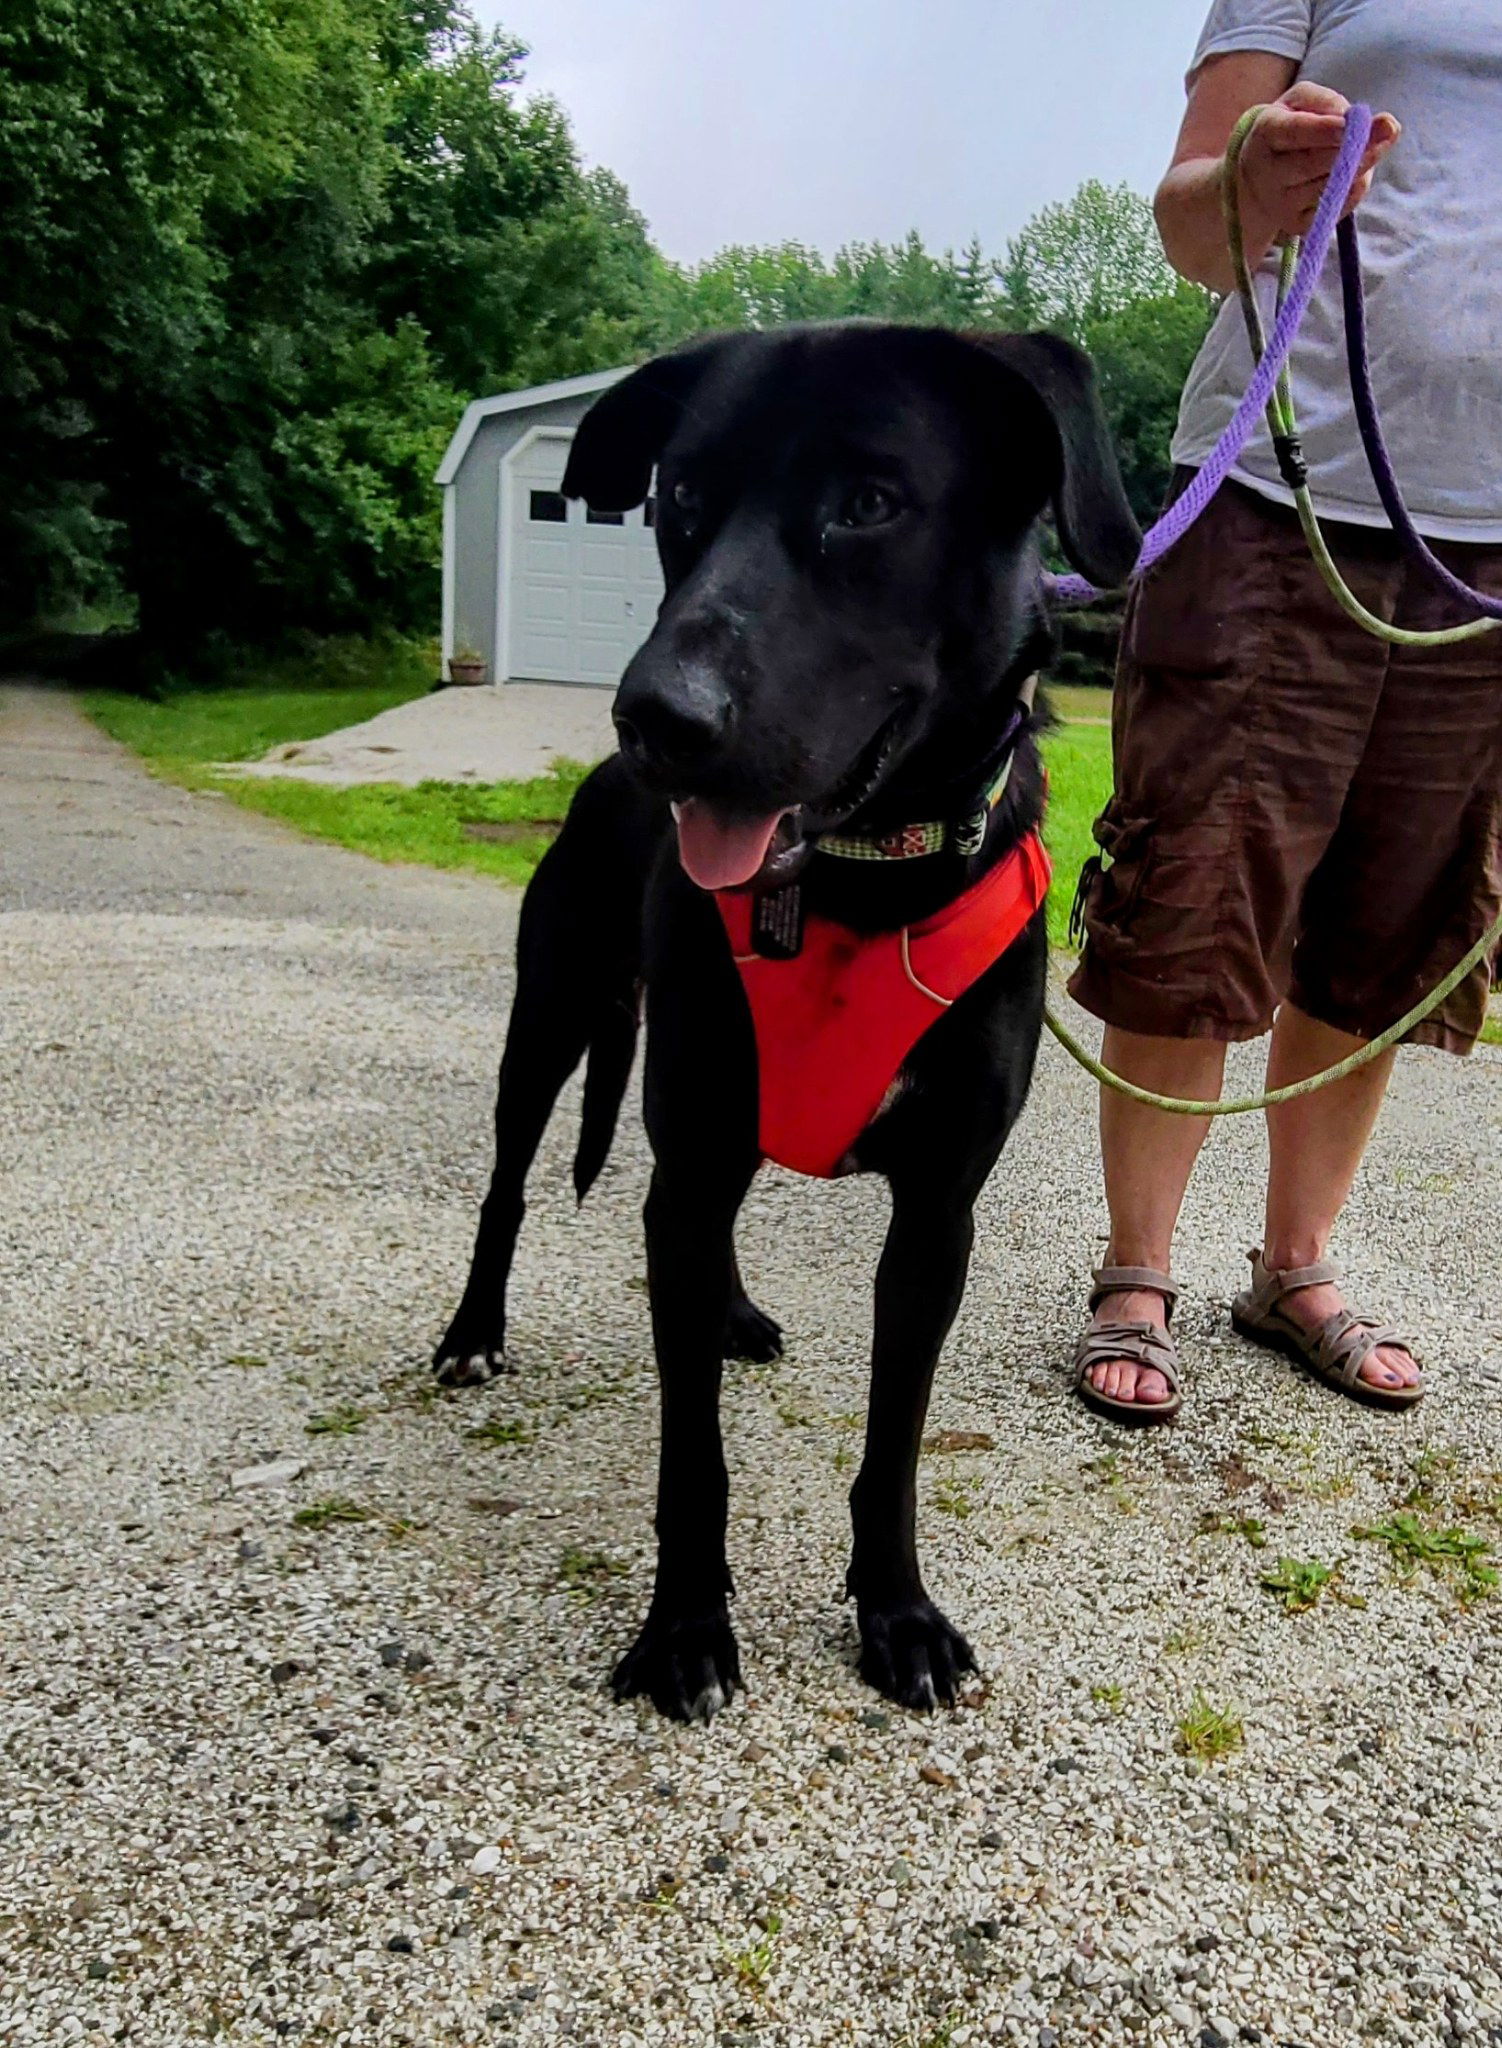 adoptable Dog in Shelburne, VT named Nova